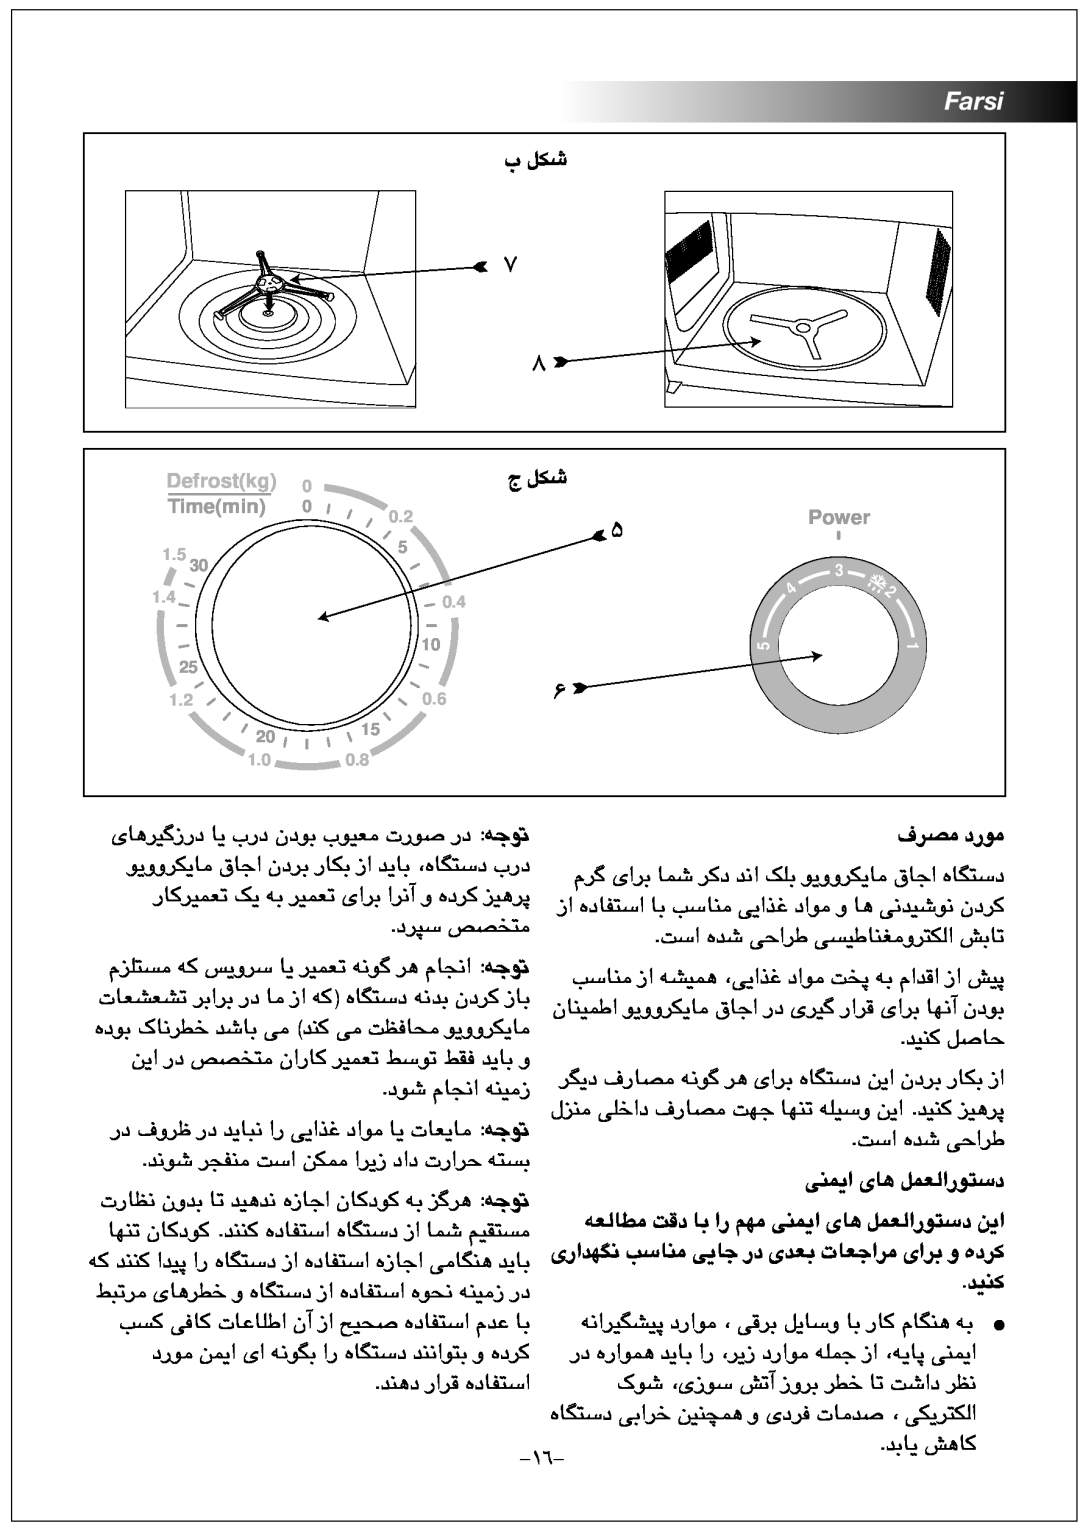 Black & Decker MY2000PSA manual Farsi, ﺏ ﻞﮑﺷ, ﺝ ﻞﮑﺷ, ﻑﺮﺼﻣ ﺩﺭﻮﻣ, ﻪﻌﻟﺎﻄﻣ ﺖﻗﺩ ﺎﺑ ﺍﺭ ﻢﻬﻣ ﯽﻨﻤﯾﺍ ﯼﺎﻫ ﻞﻤﻌﻟﺍﺭﻮﺘﺳﺩ ﻦﯾﺍ, ﺪﯿﻨﮐ 